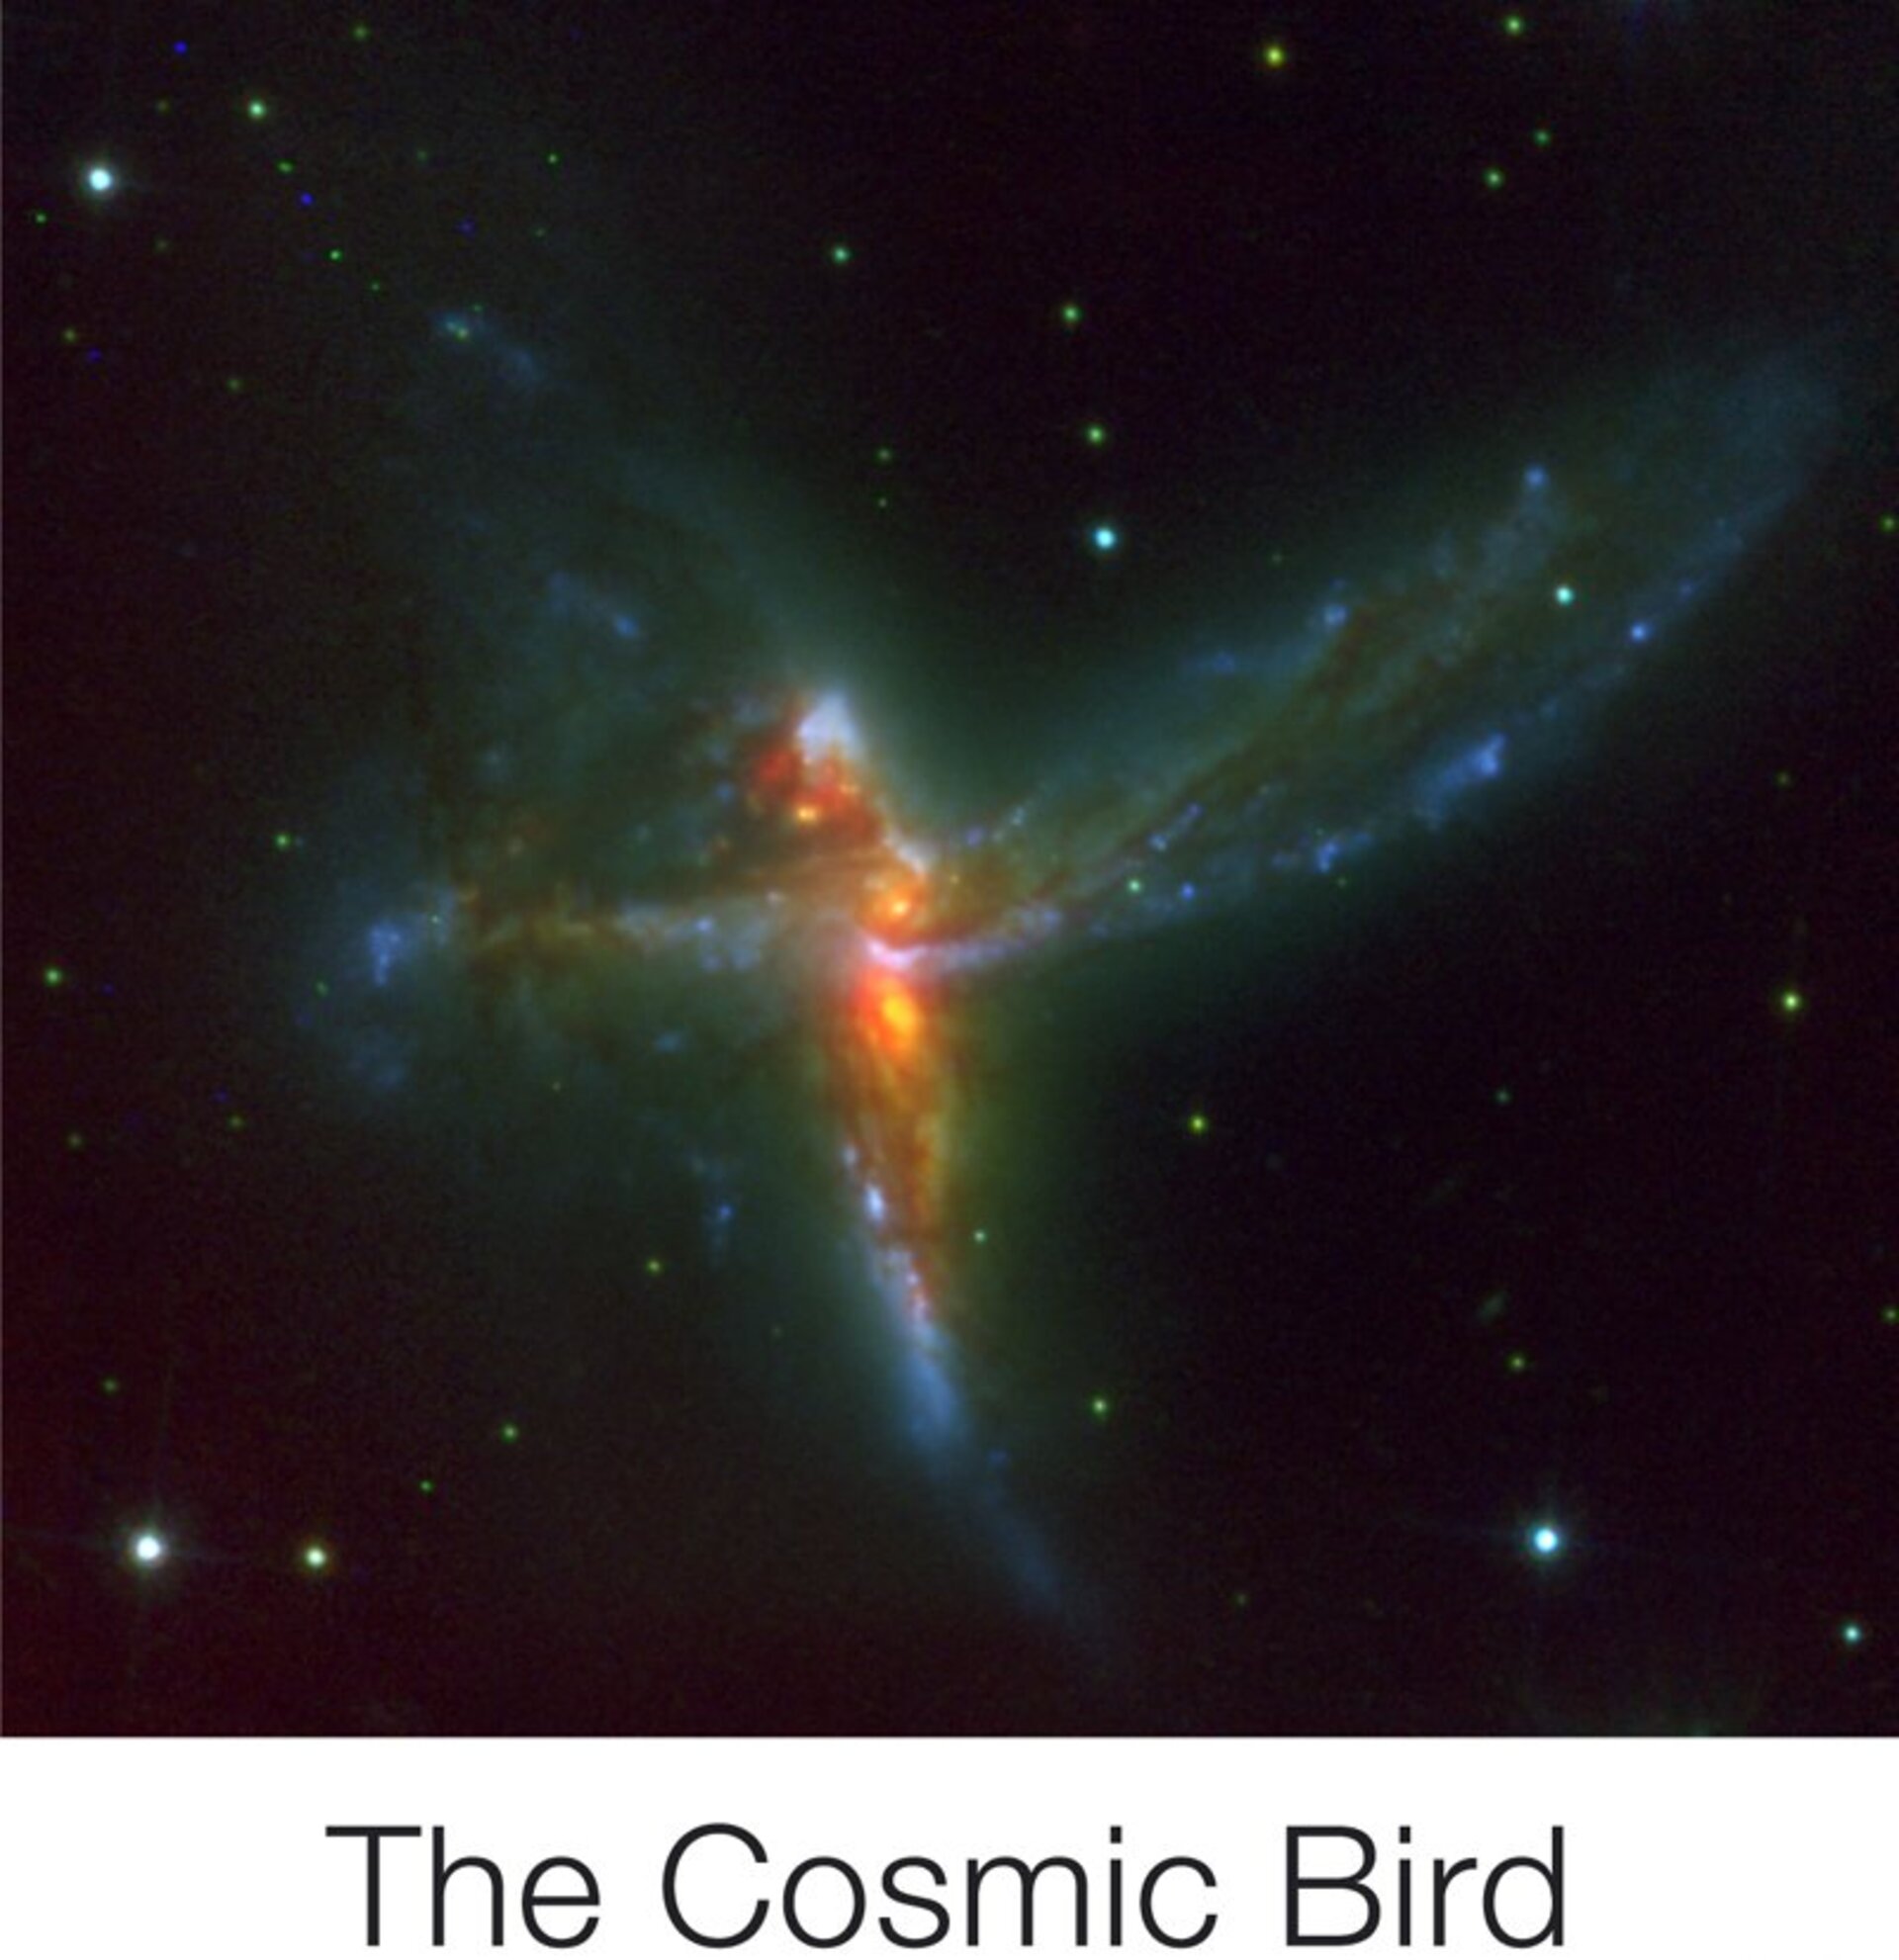 Triple fusion de galaxies: l'oiseau du Cosmos, photographié en décembre 2007 grâce au VLT